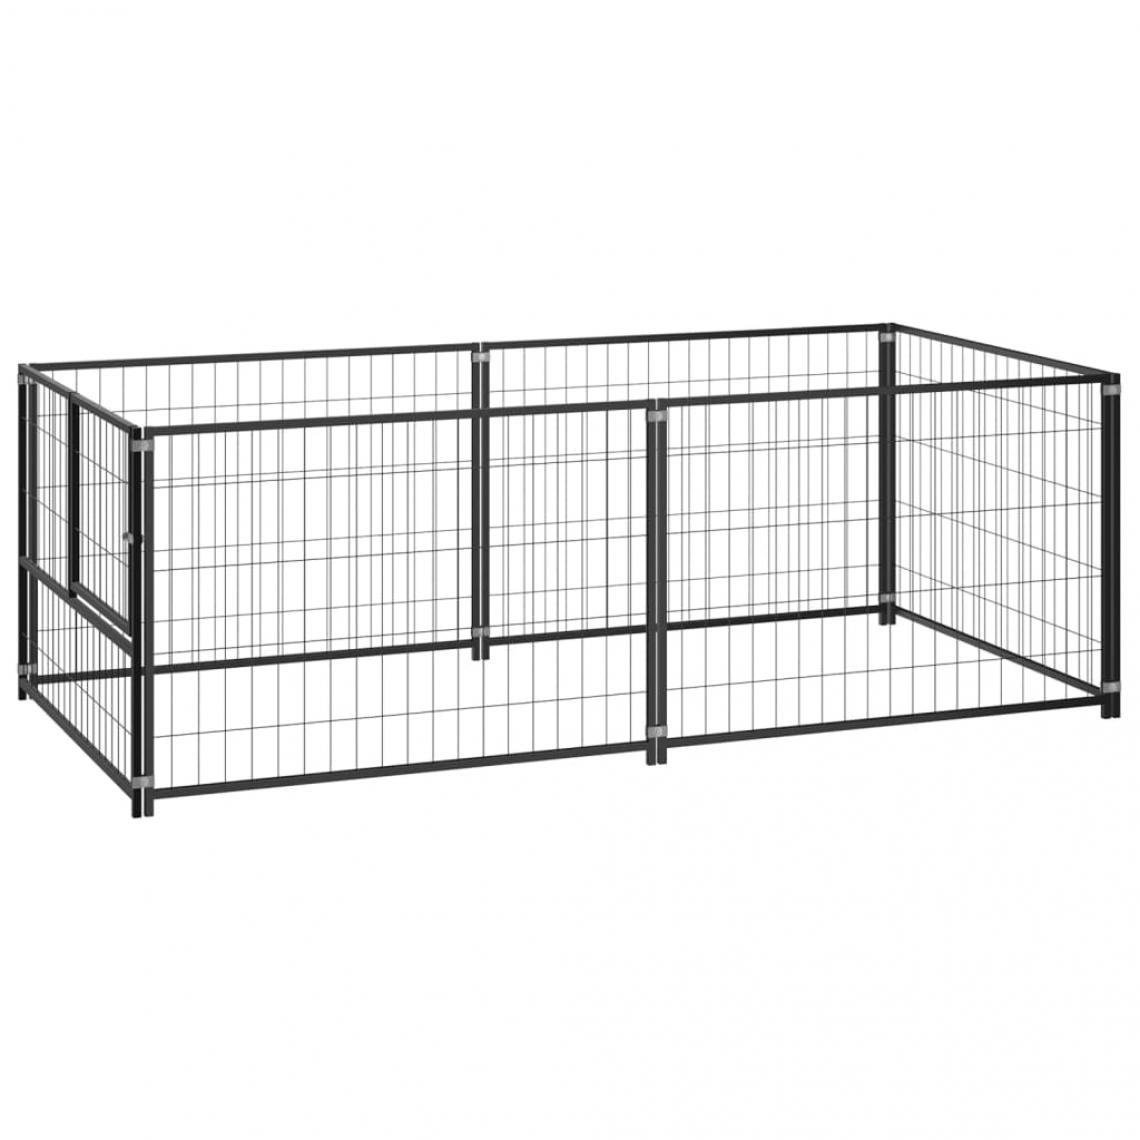 Helloshop26 - Chenil extérieur cage enclos parc animaux chien noir 200 x 100 x 70 cm acier 02_0000508 - Clôture pour chien